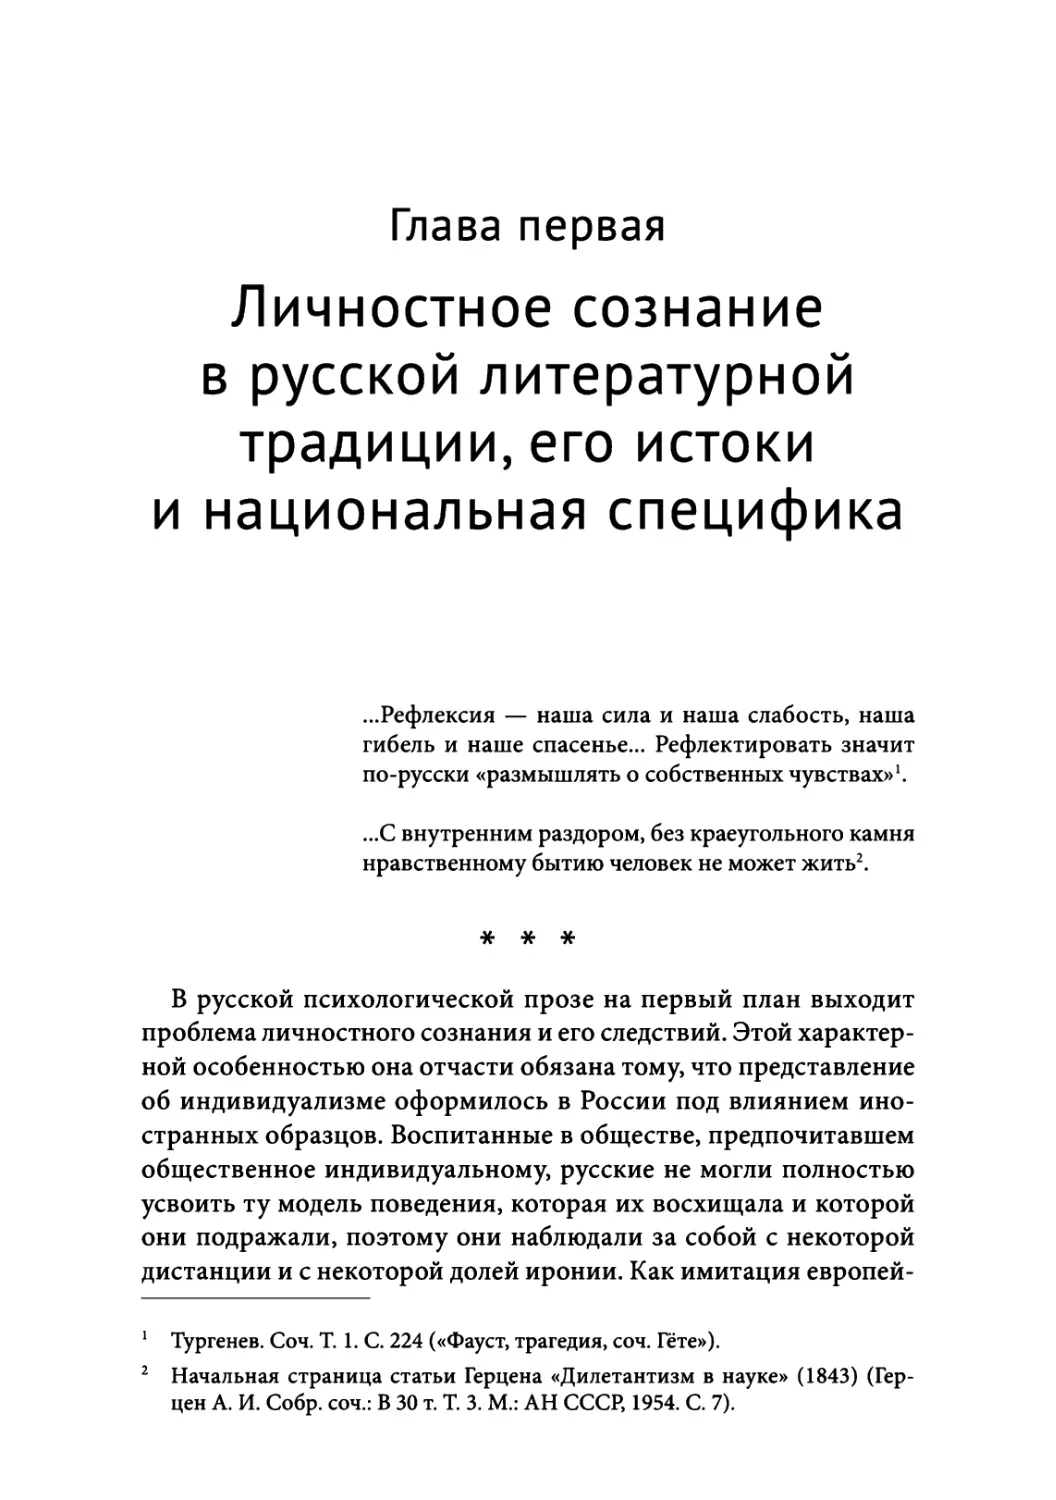 Глава 1. Личностное сознание в русской литературной традиции, его истоки и национальная специфика